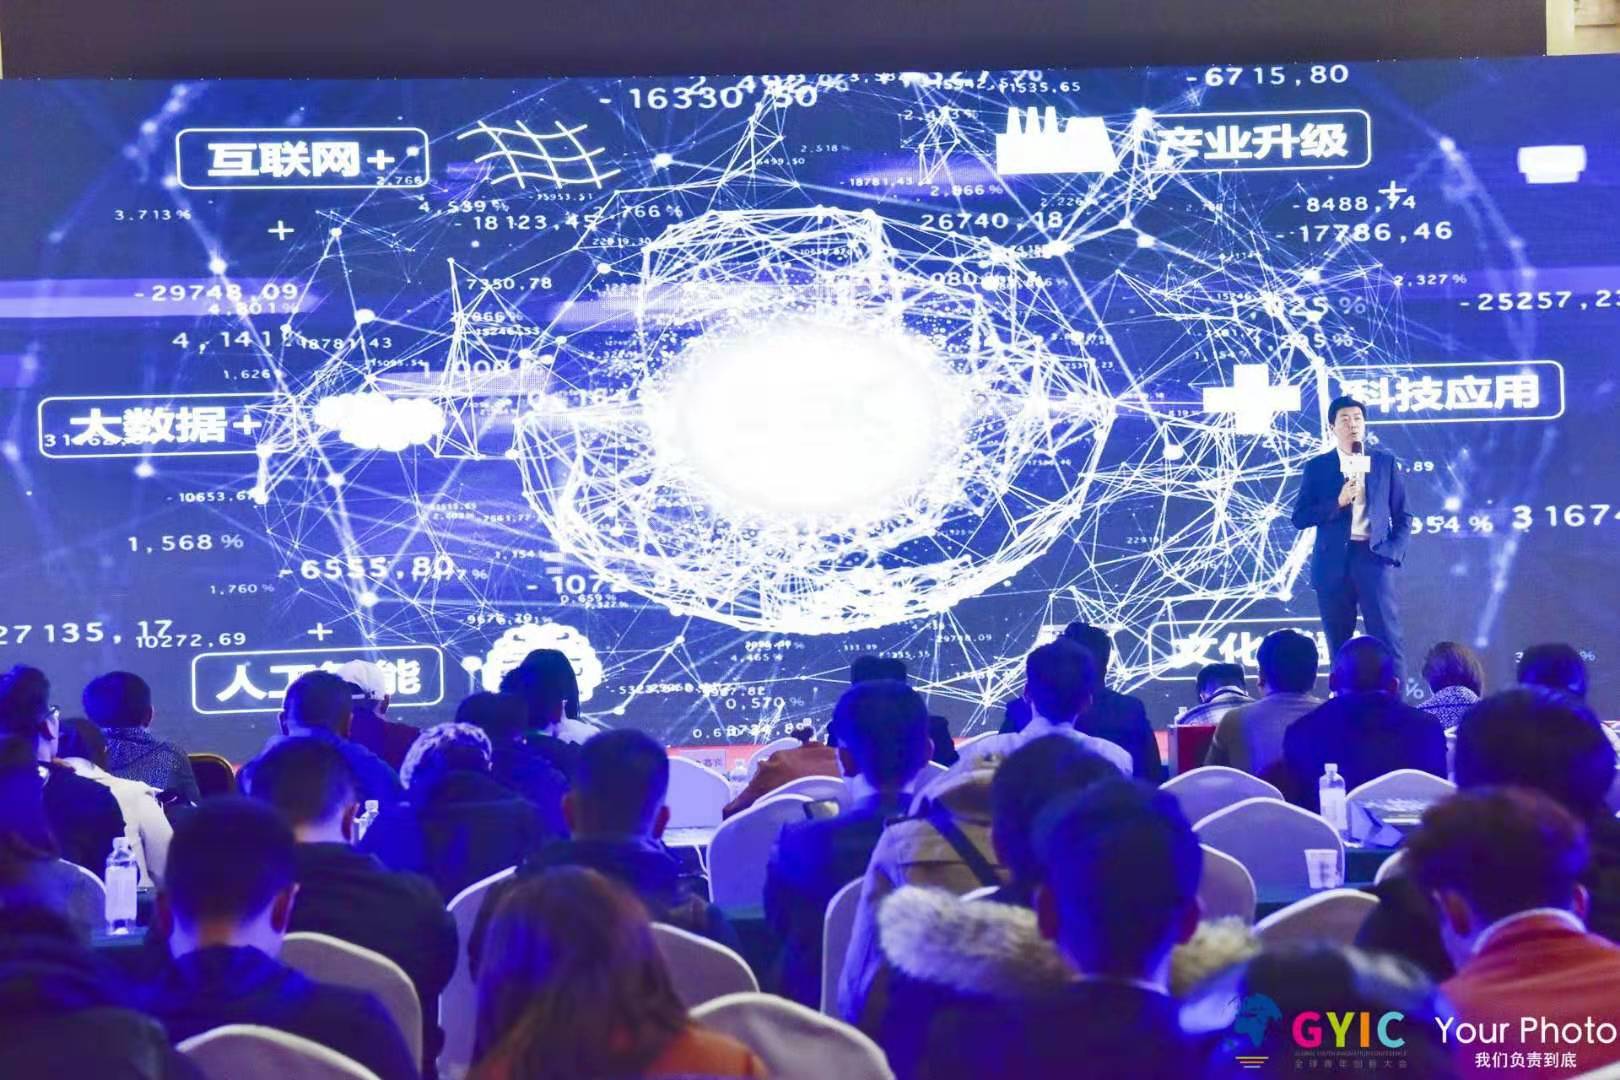 BWE蓝鲸会2019中国高成长企业峰会在京举办，近千位企业领袖出席峰会